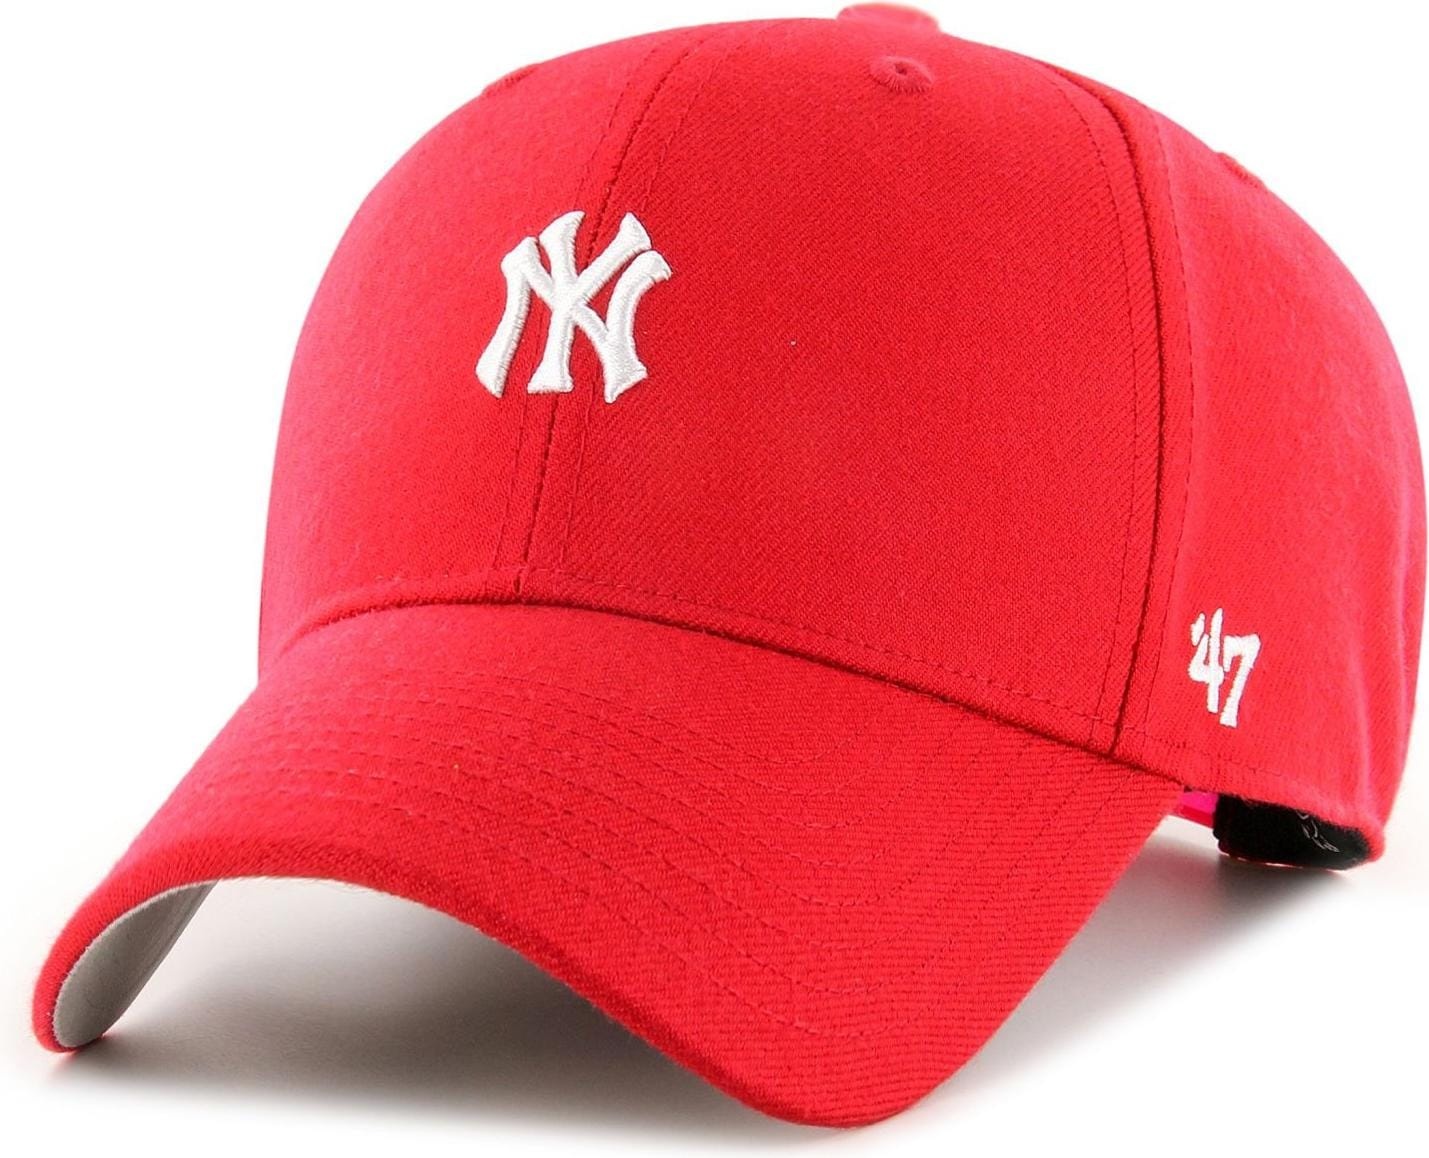 47 Brand, Herren, Cap, Snapback Cap - Base Runner New York Yankees Rot, Rot